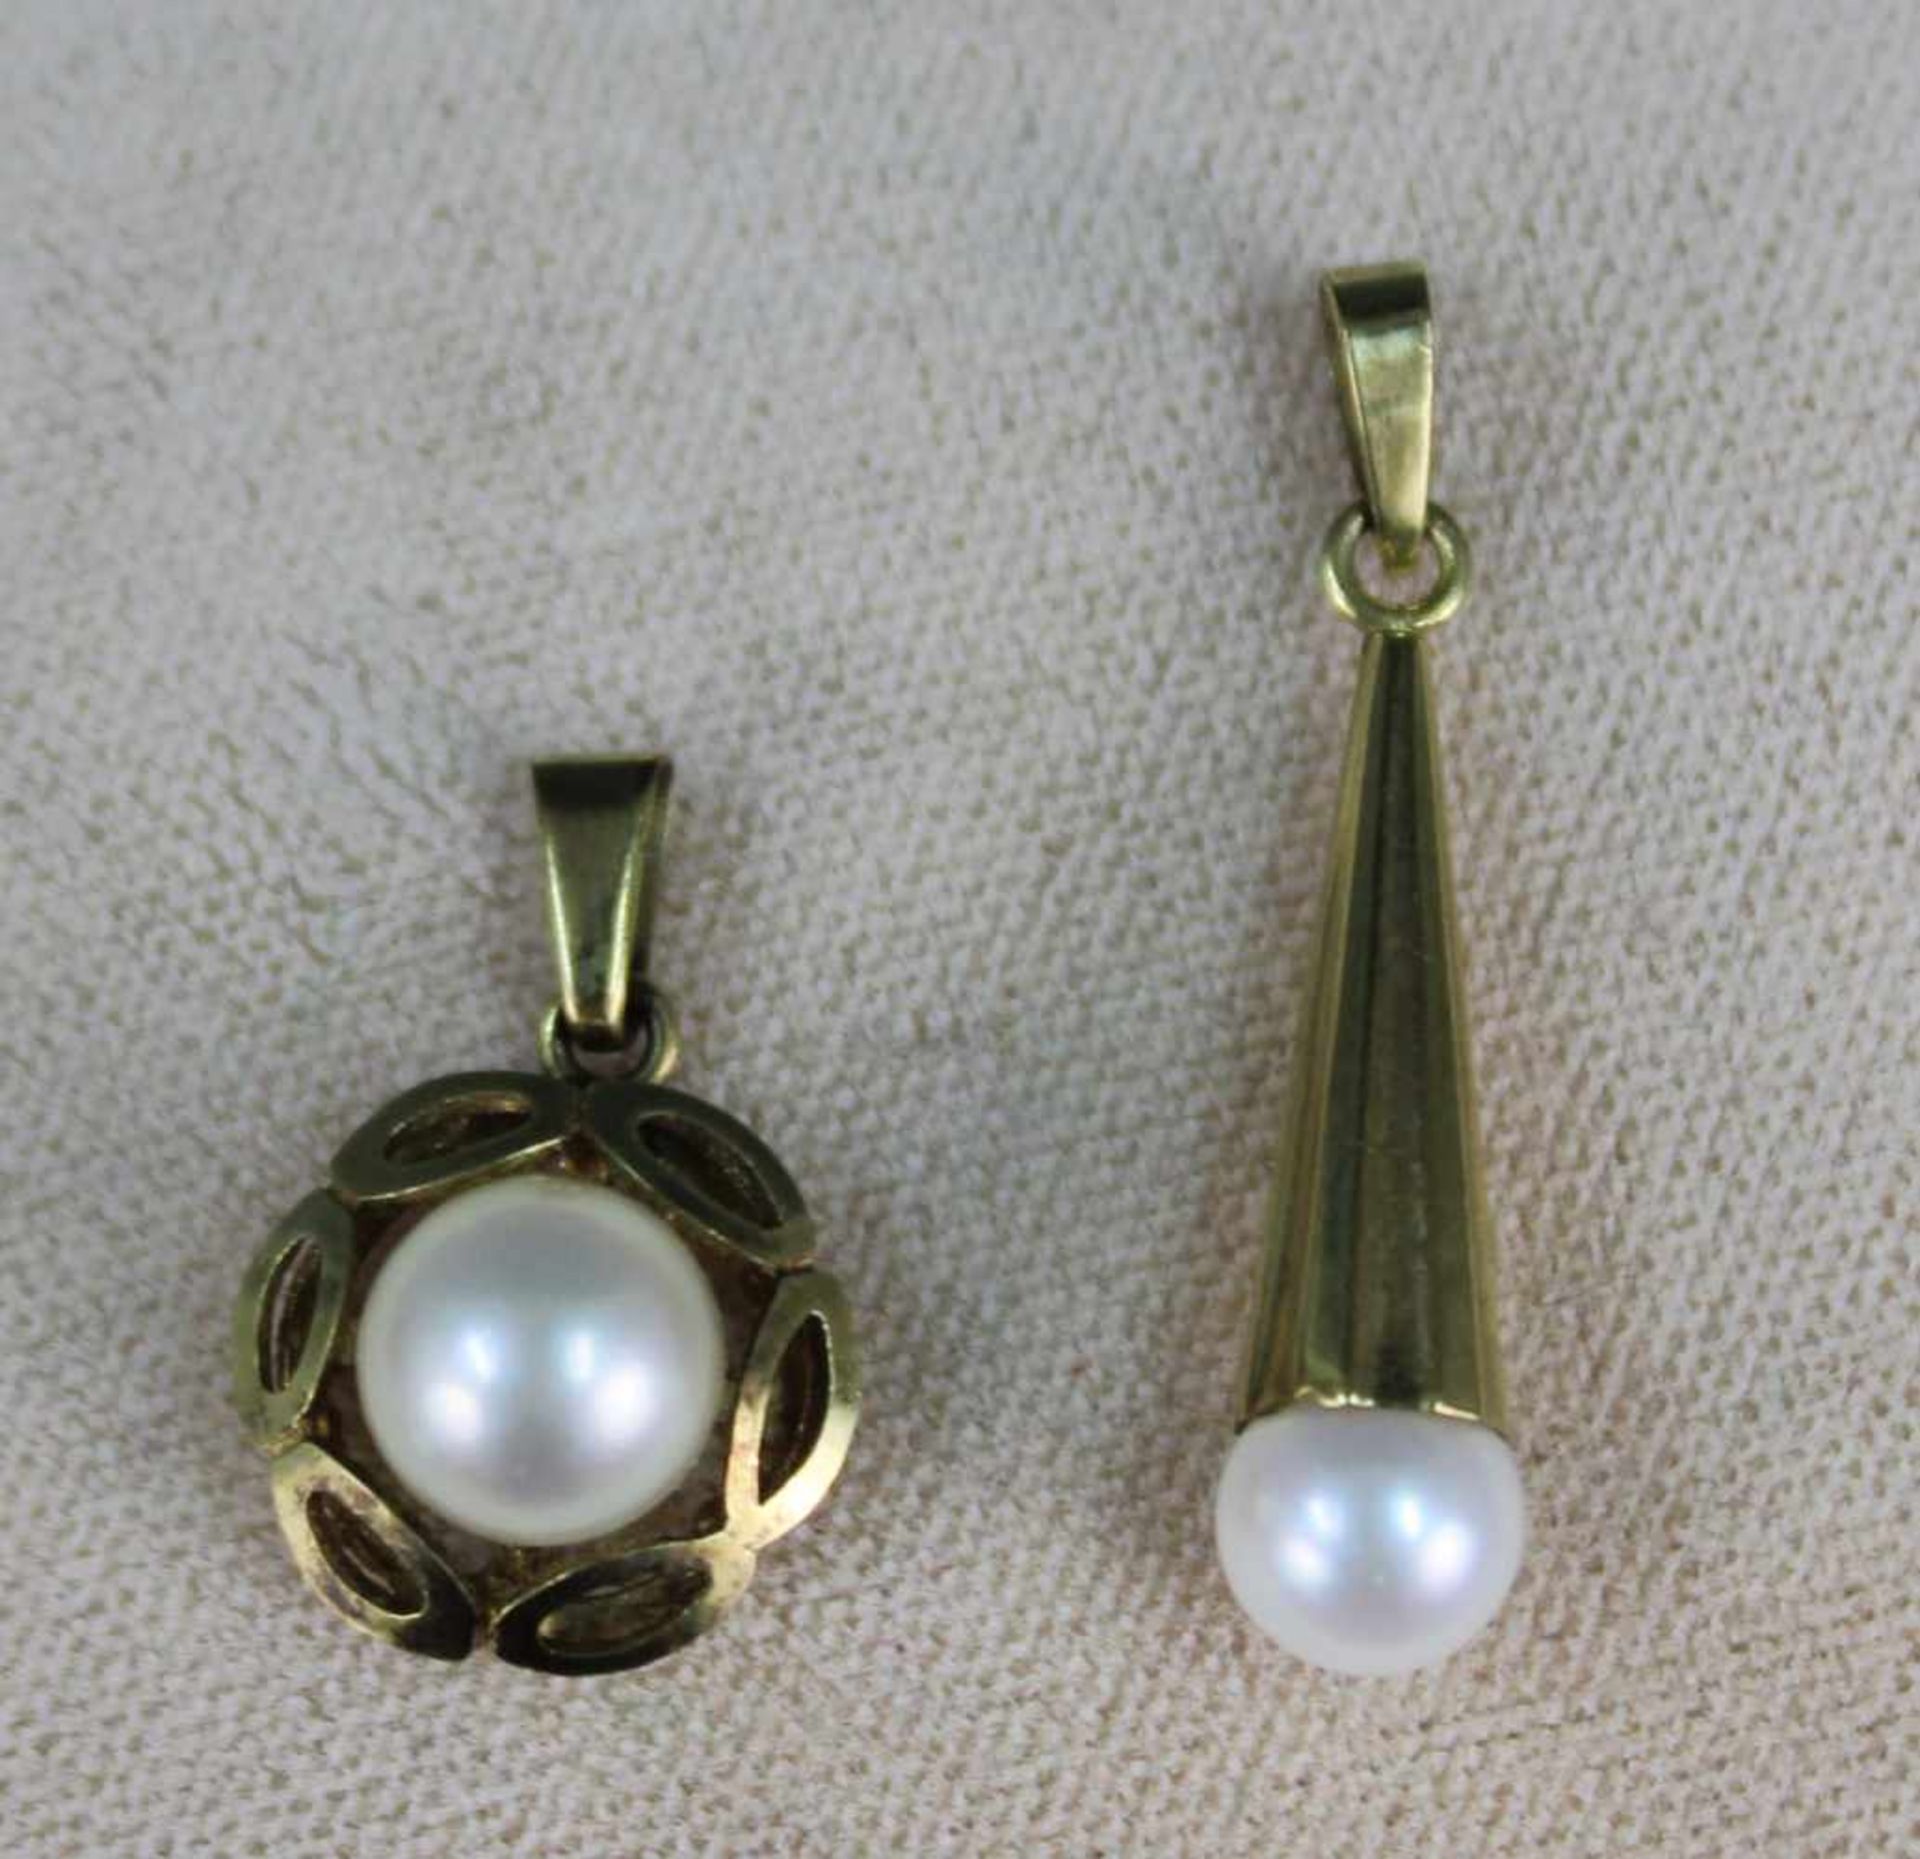 Perlen Schmuck Gold 333. Gesamtgewicht 12,8 Gramm.Pearl jewelry gold 333. Total weight 12.8 grams. - Bild 3 aus 10